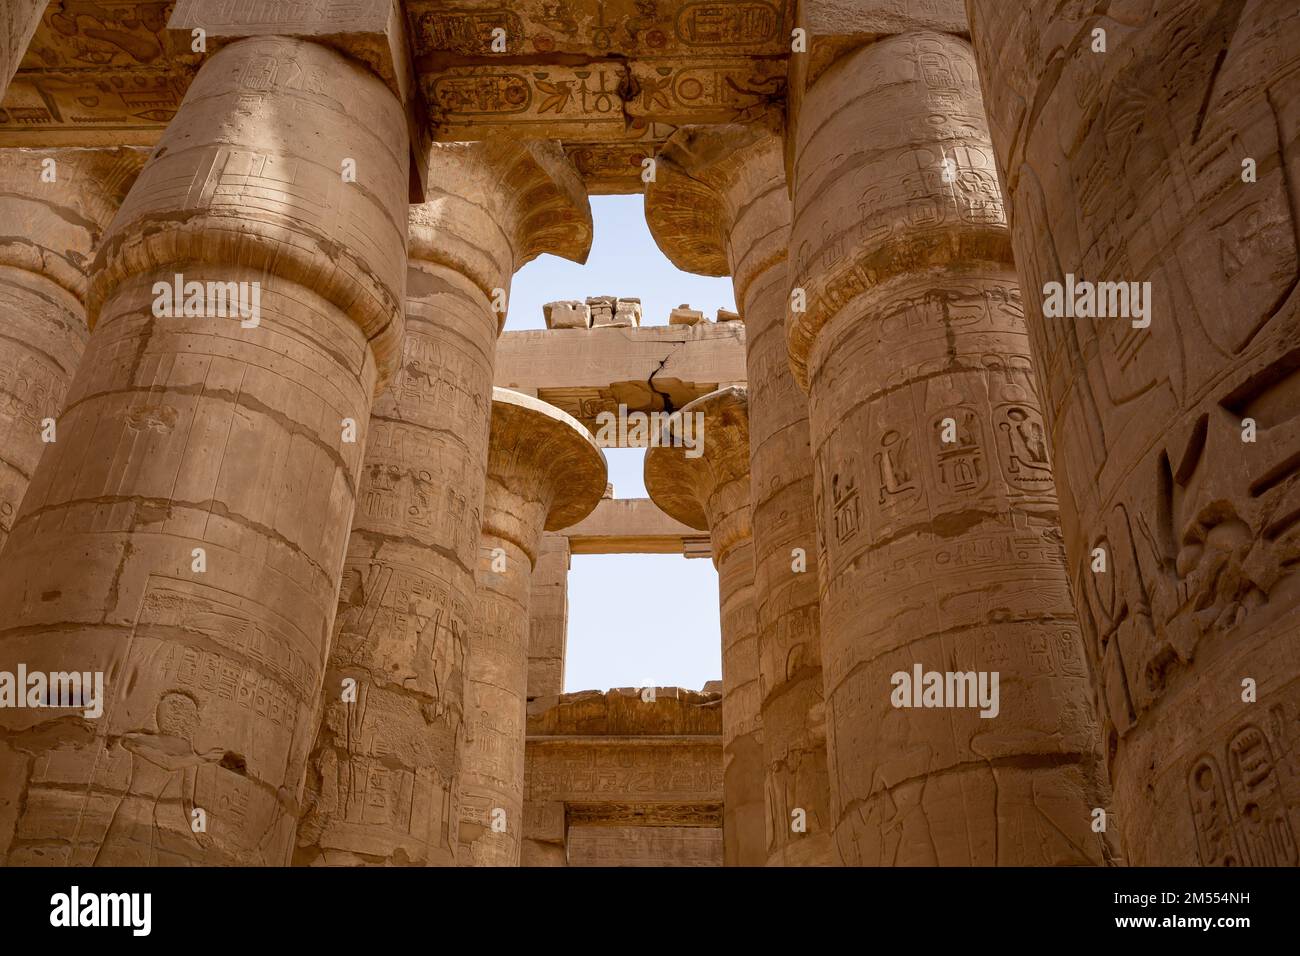 Ruines du temple égyptien de Karnak, le plus grand musée en plein air de Louxor. Égypte. Banque D'Images